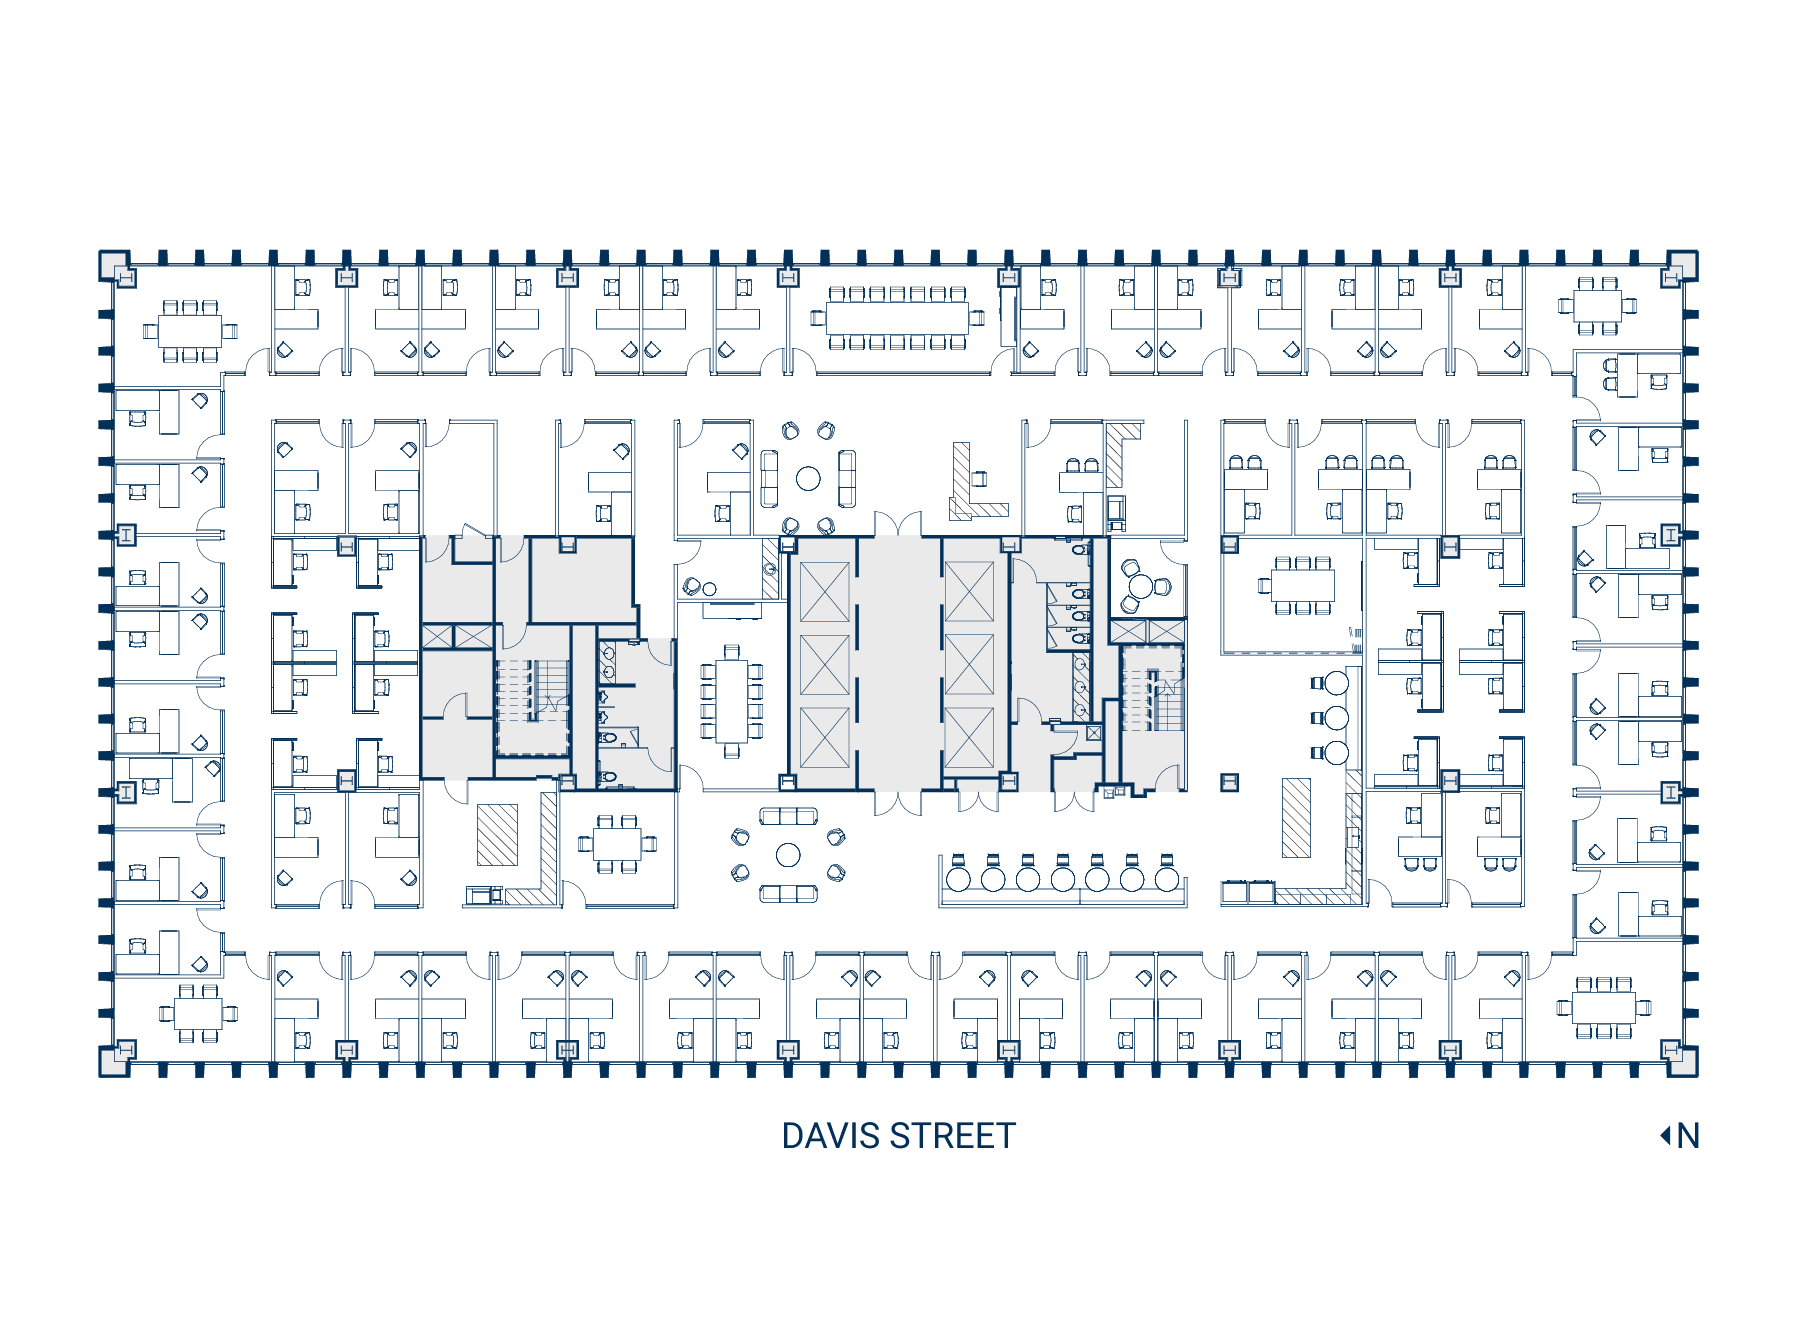 Floor 36 Suite 3600 Floor Plan - Hypothetical Private Office (Web)